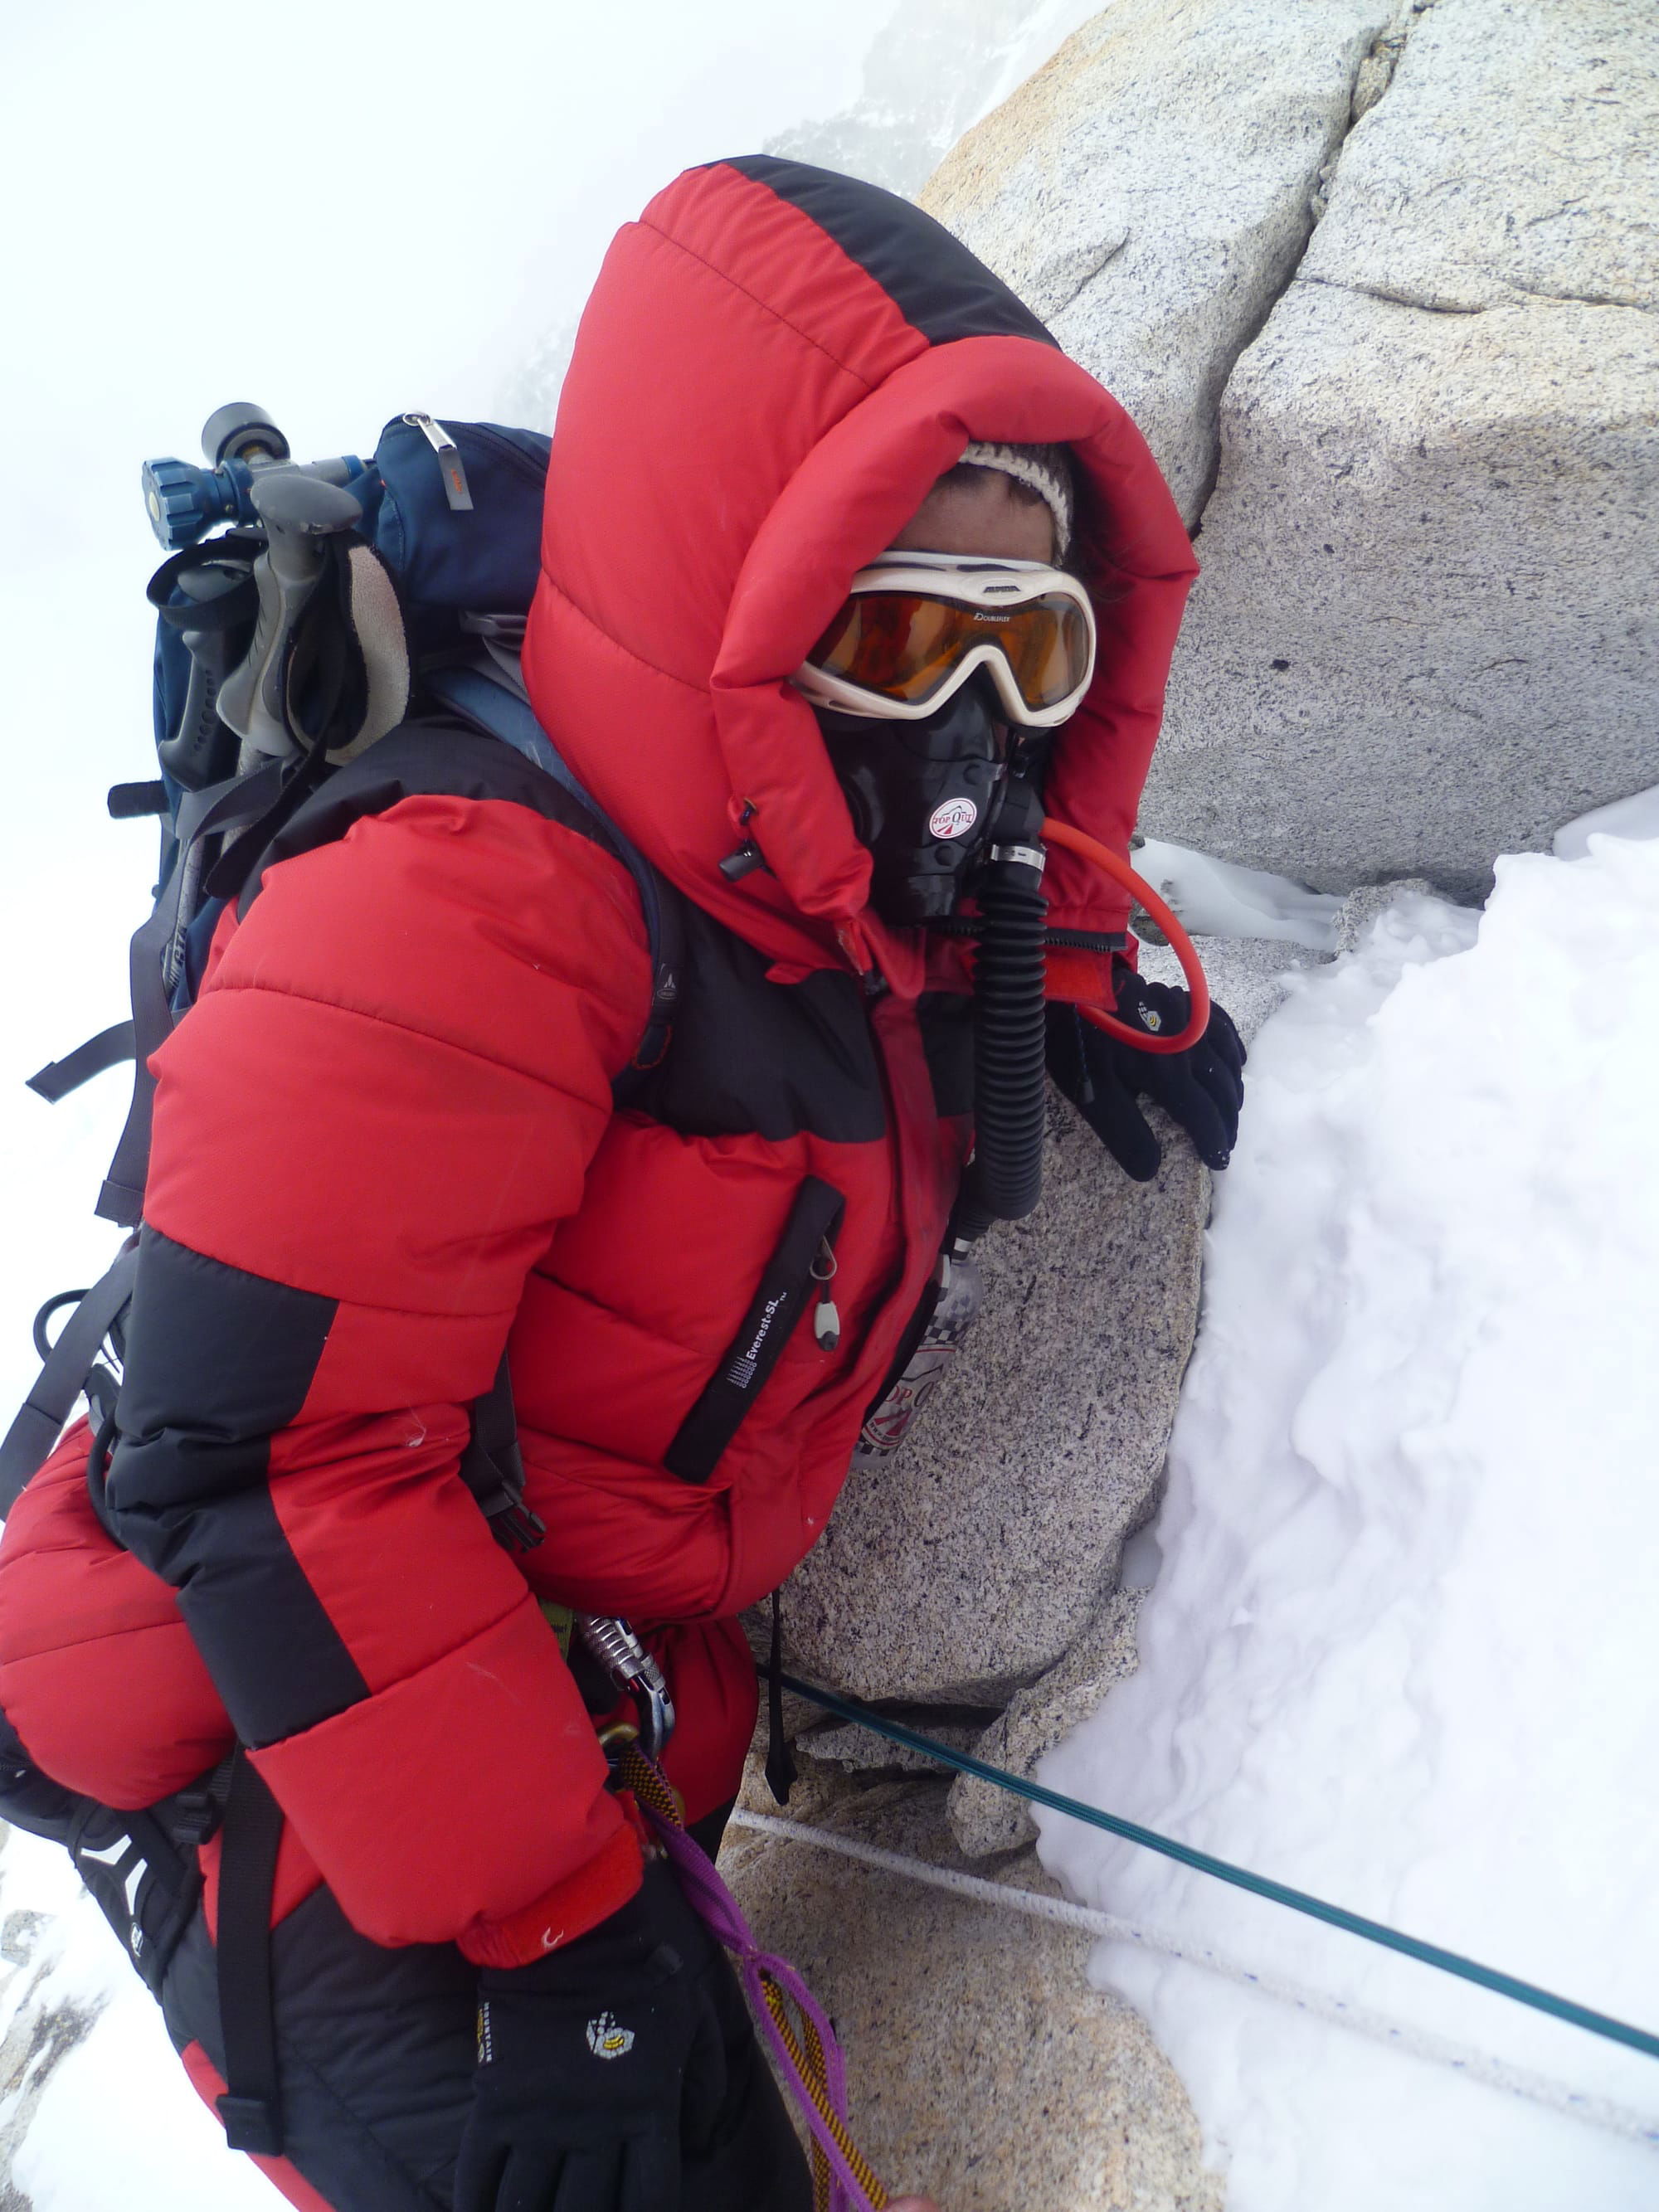 Makalu 8463 climbing expedition- 2011